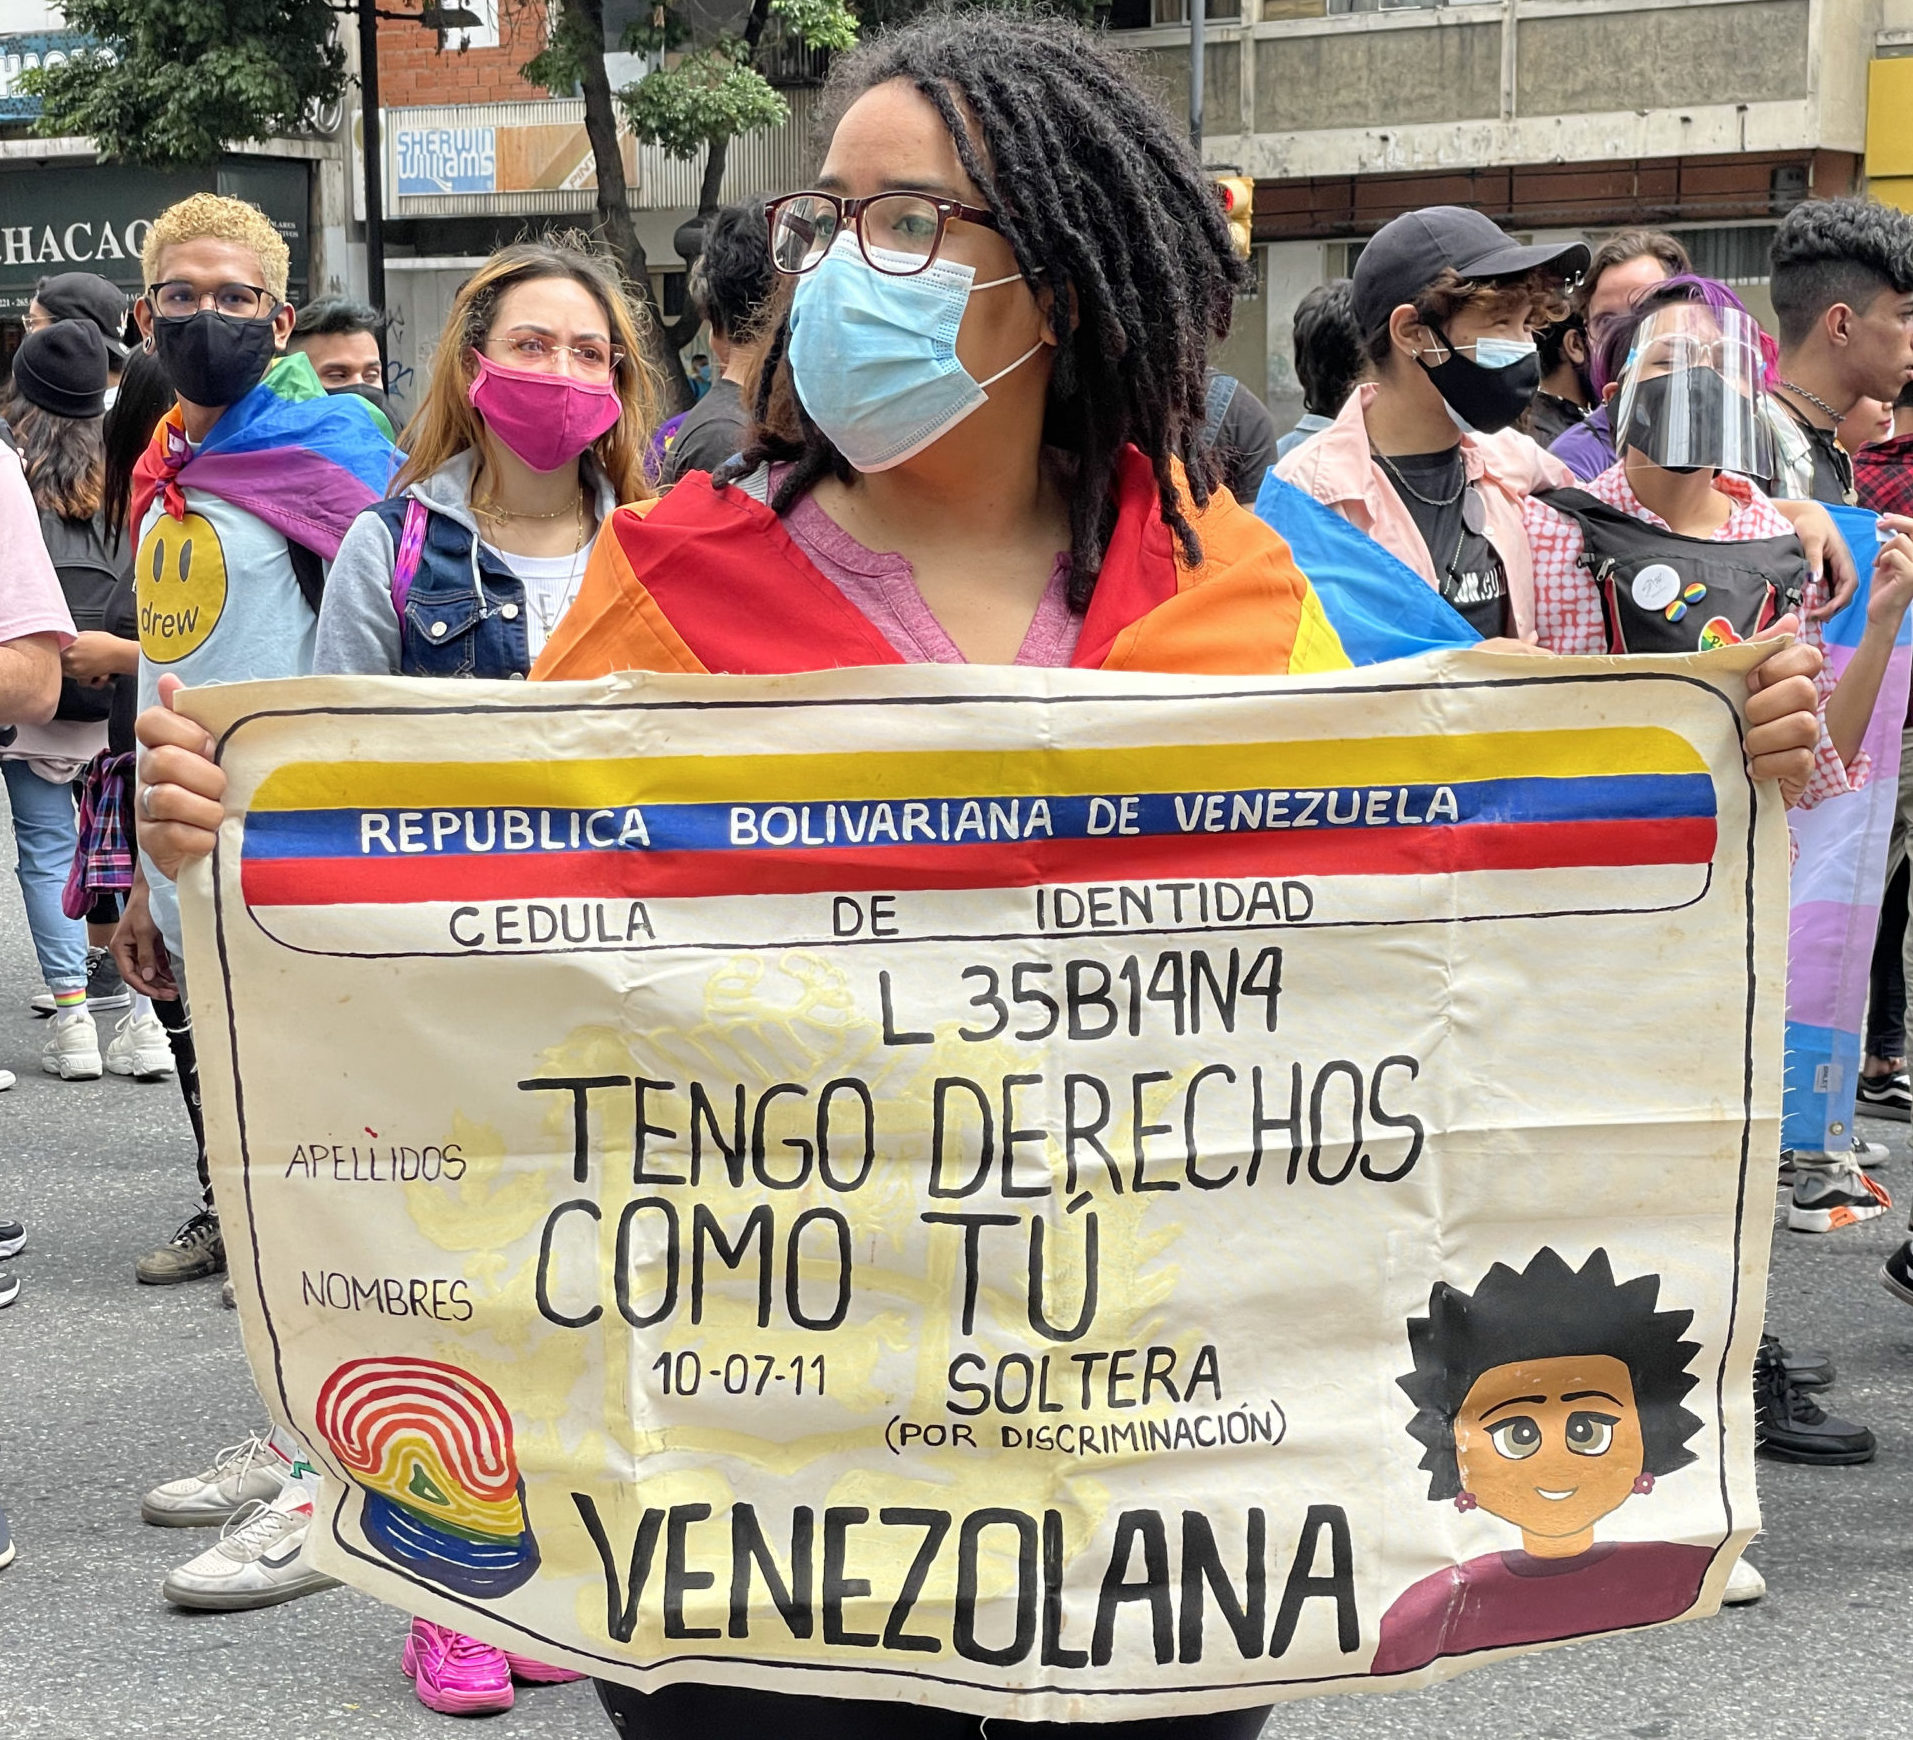 Los discursos de odio promueven los crímenes contra personas LGBTIQ+ en Venezuela